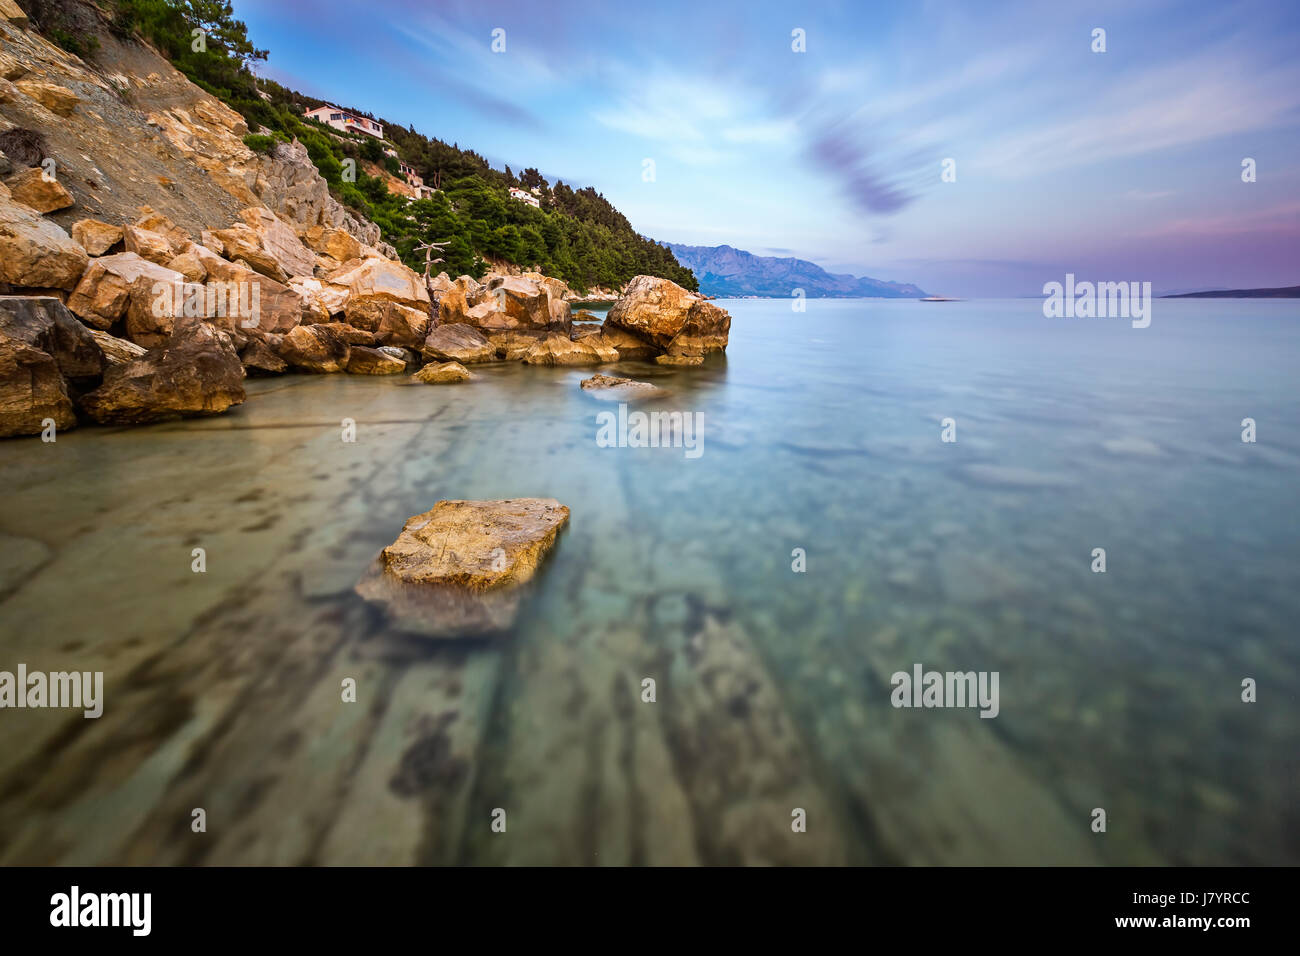 Plage de rochers et mer transparente près de omis dans la soirée, la Dalmatie, Croatie Banque D'Images